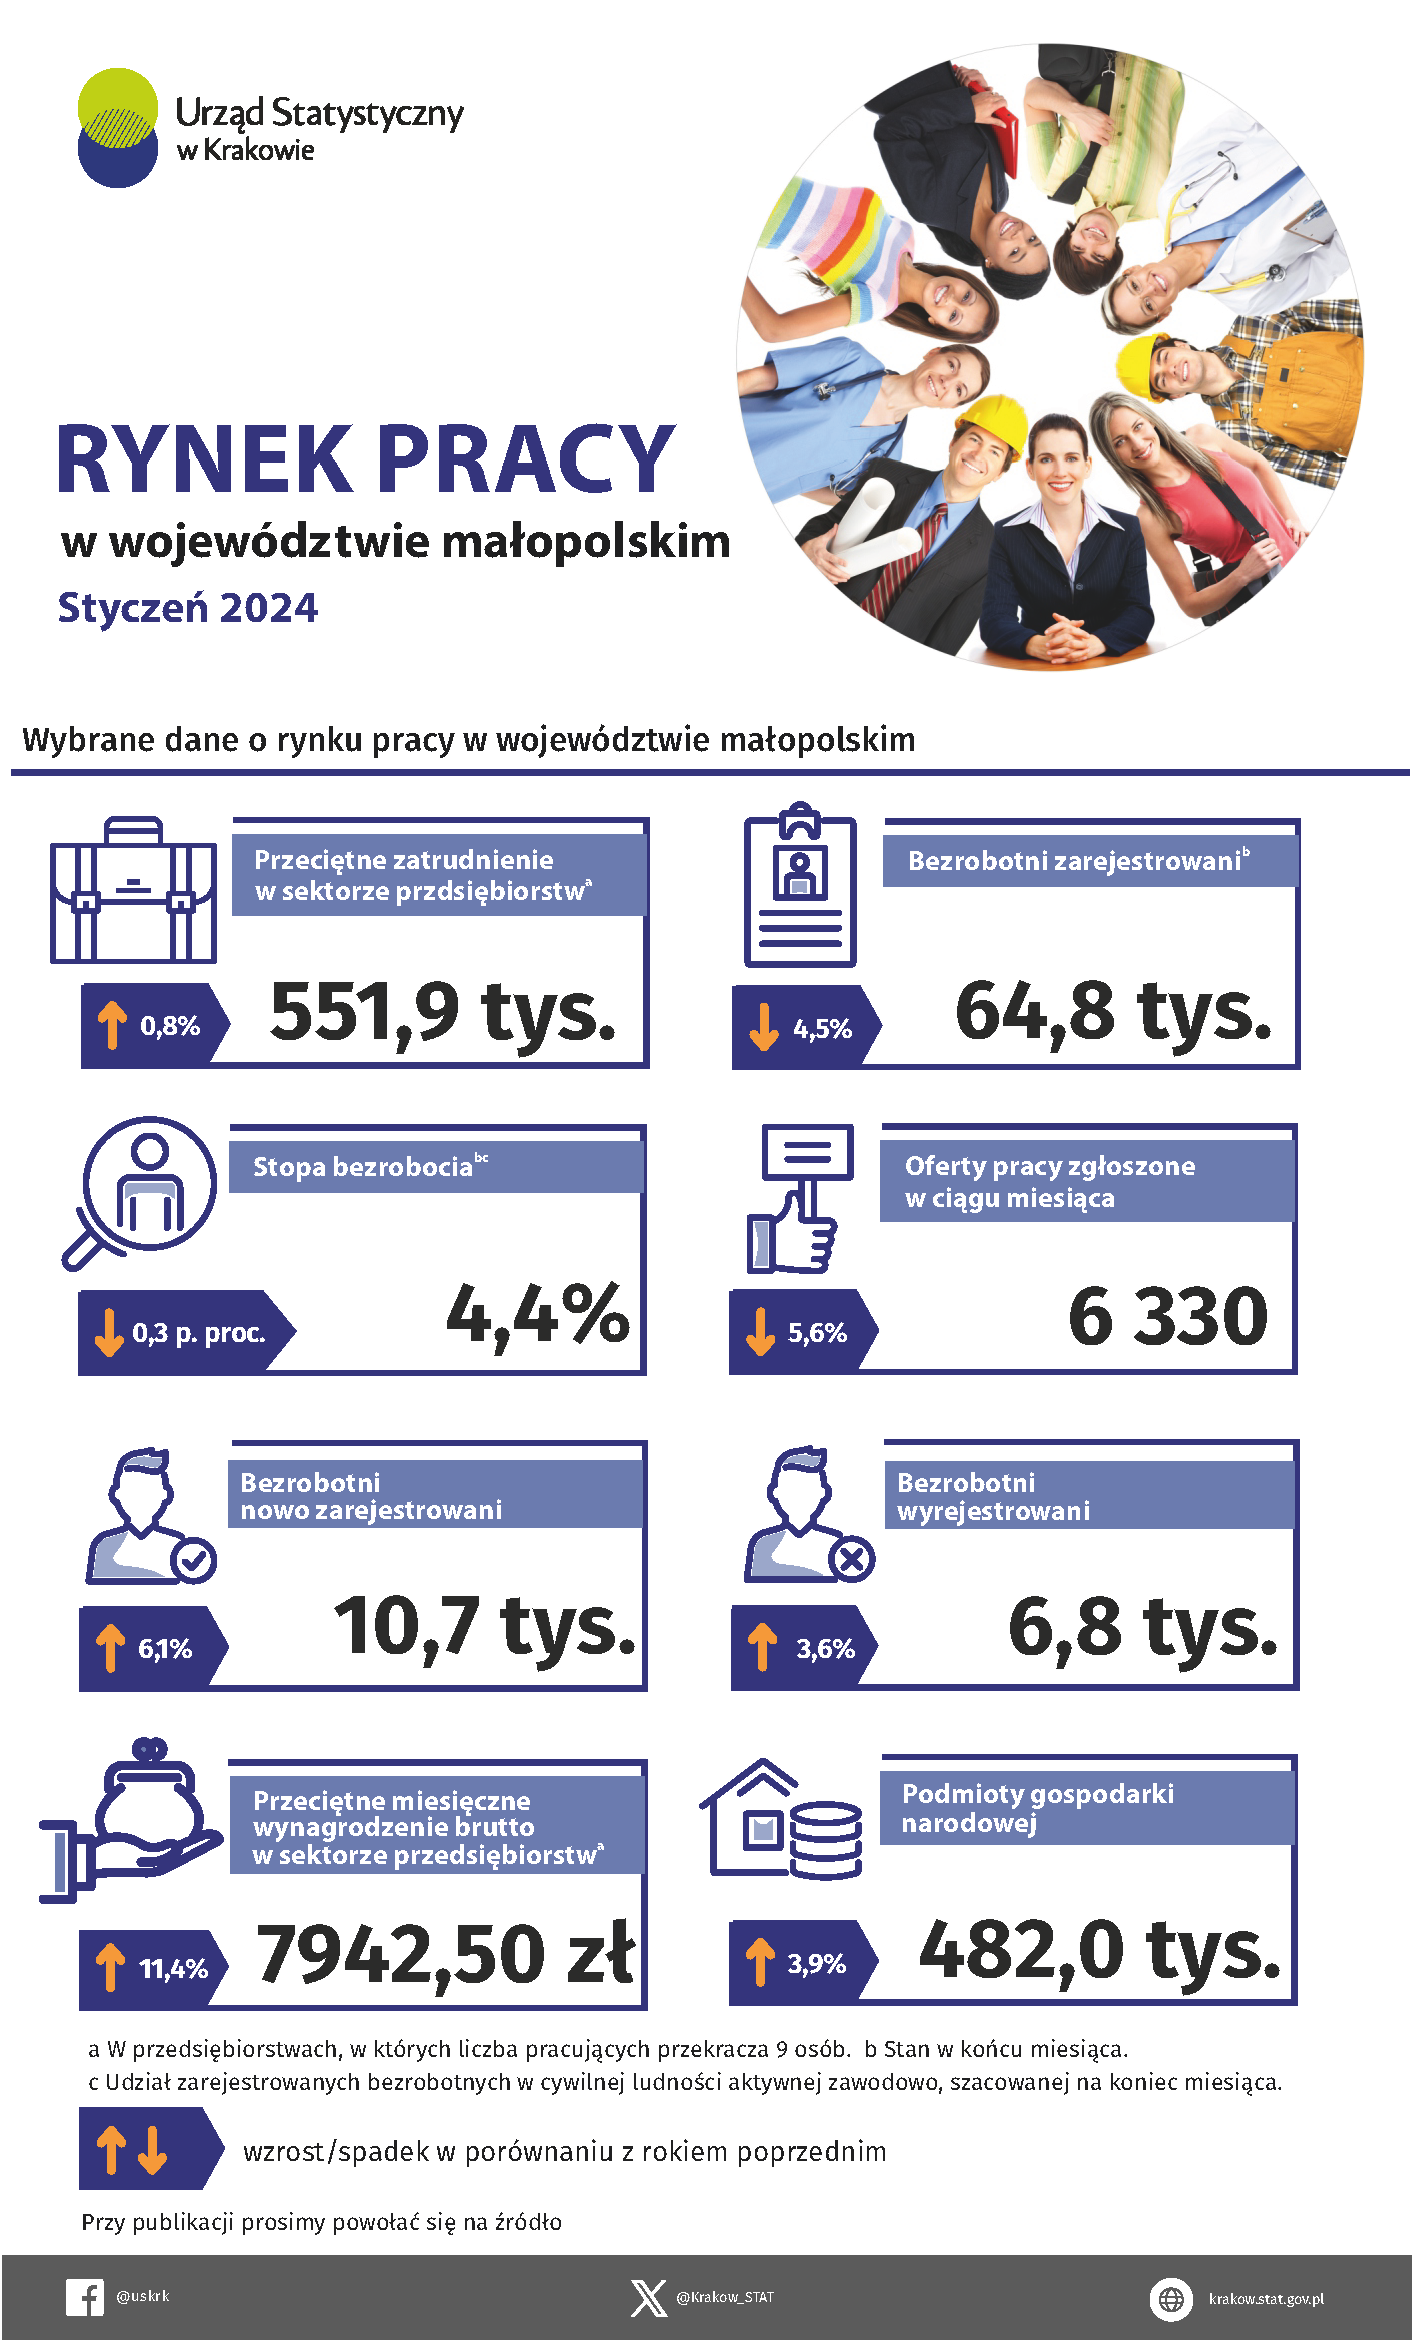 Rynek pracy w województwie małopolskim w styczniu 2024 – infografika z wybranymi danymi dotyczącymi rynku pracy.